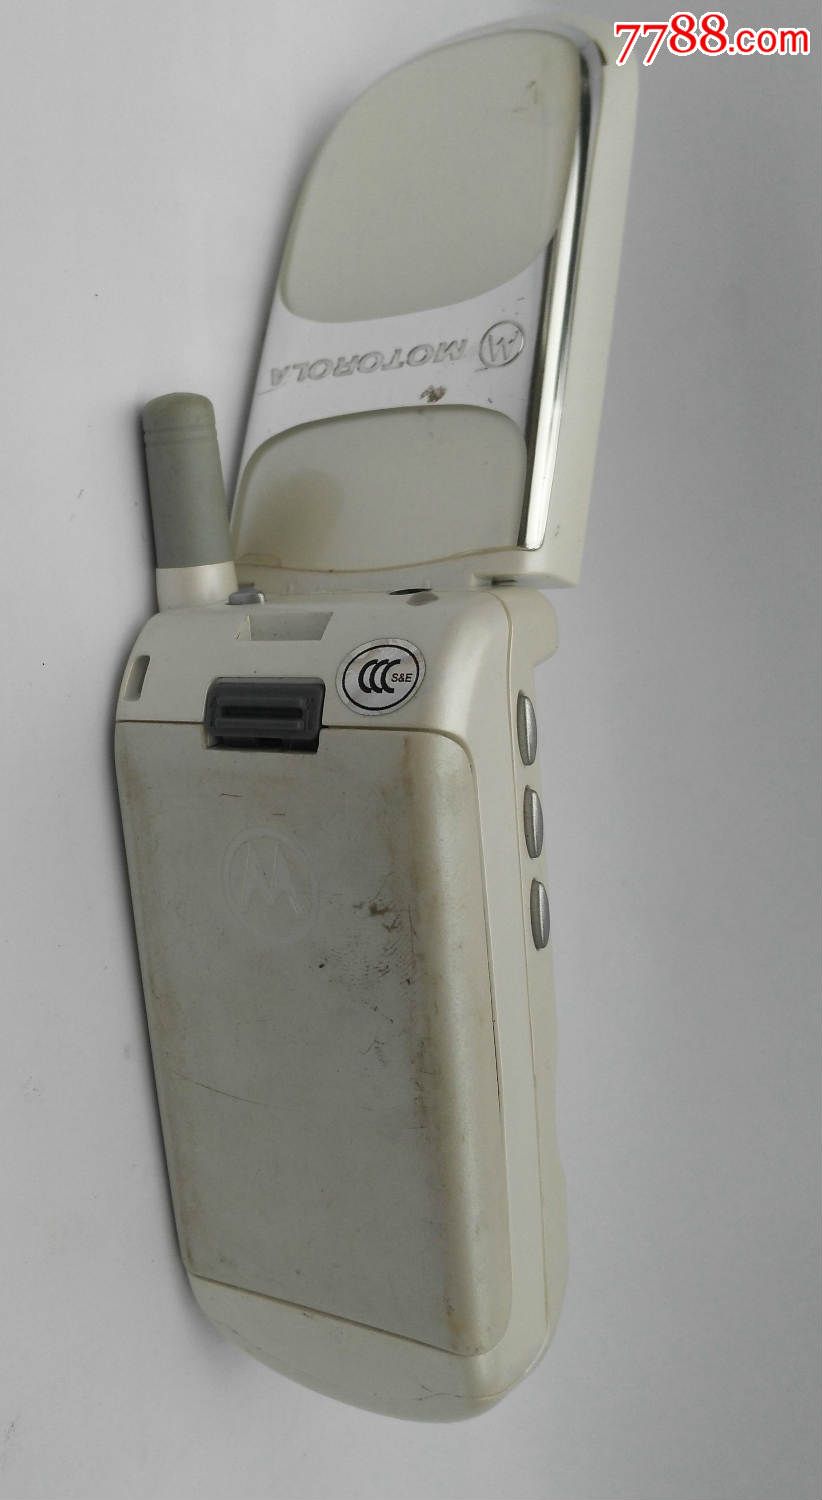 摩托罗拉v998c旧手机一个(带充电器)(hh:155)